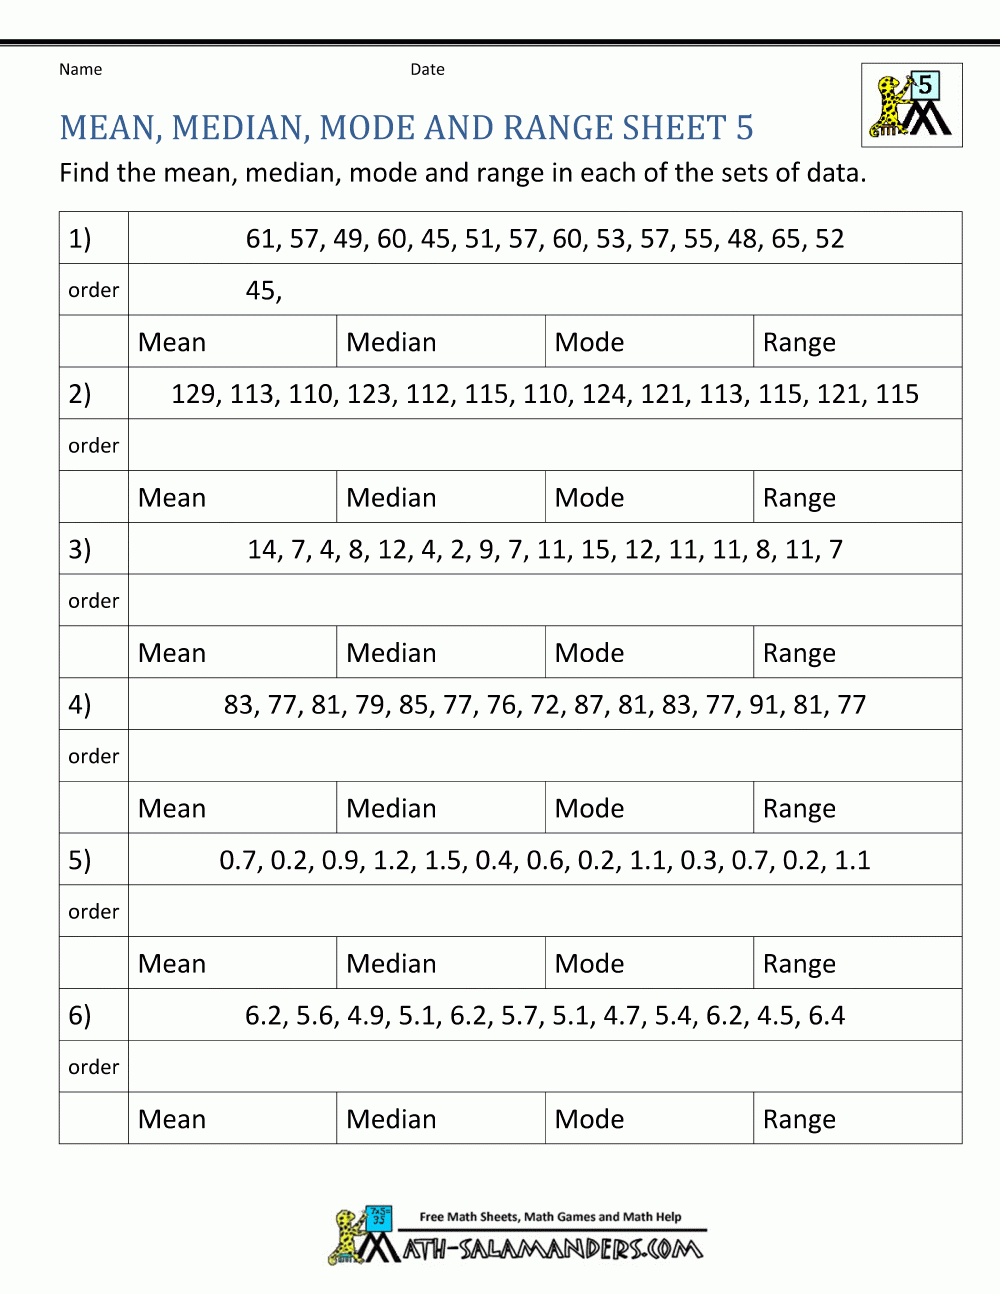 Mean Median Mode Range Worksheets For Mean Mode Median And Range Worksheet Answers